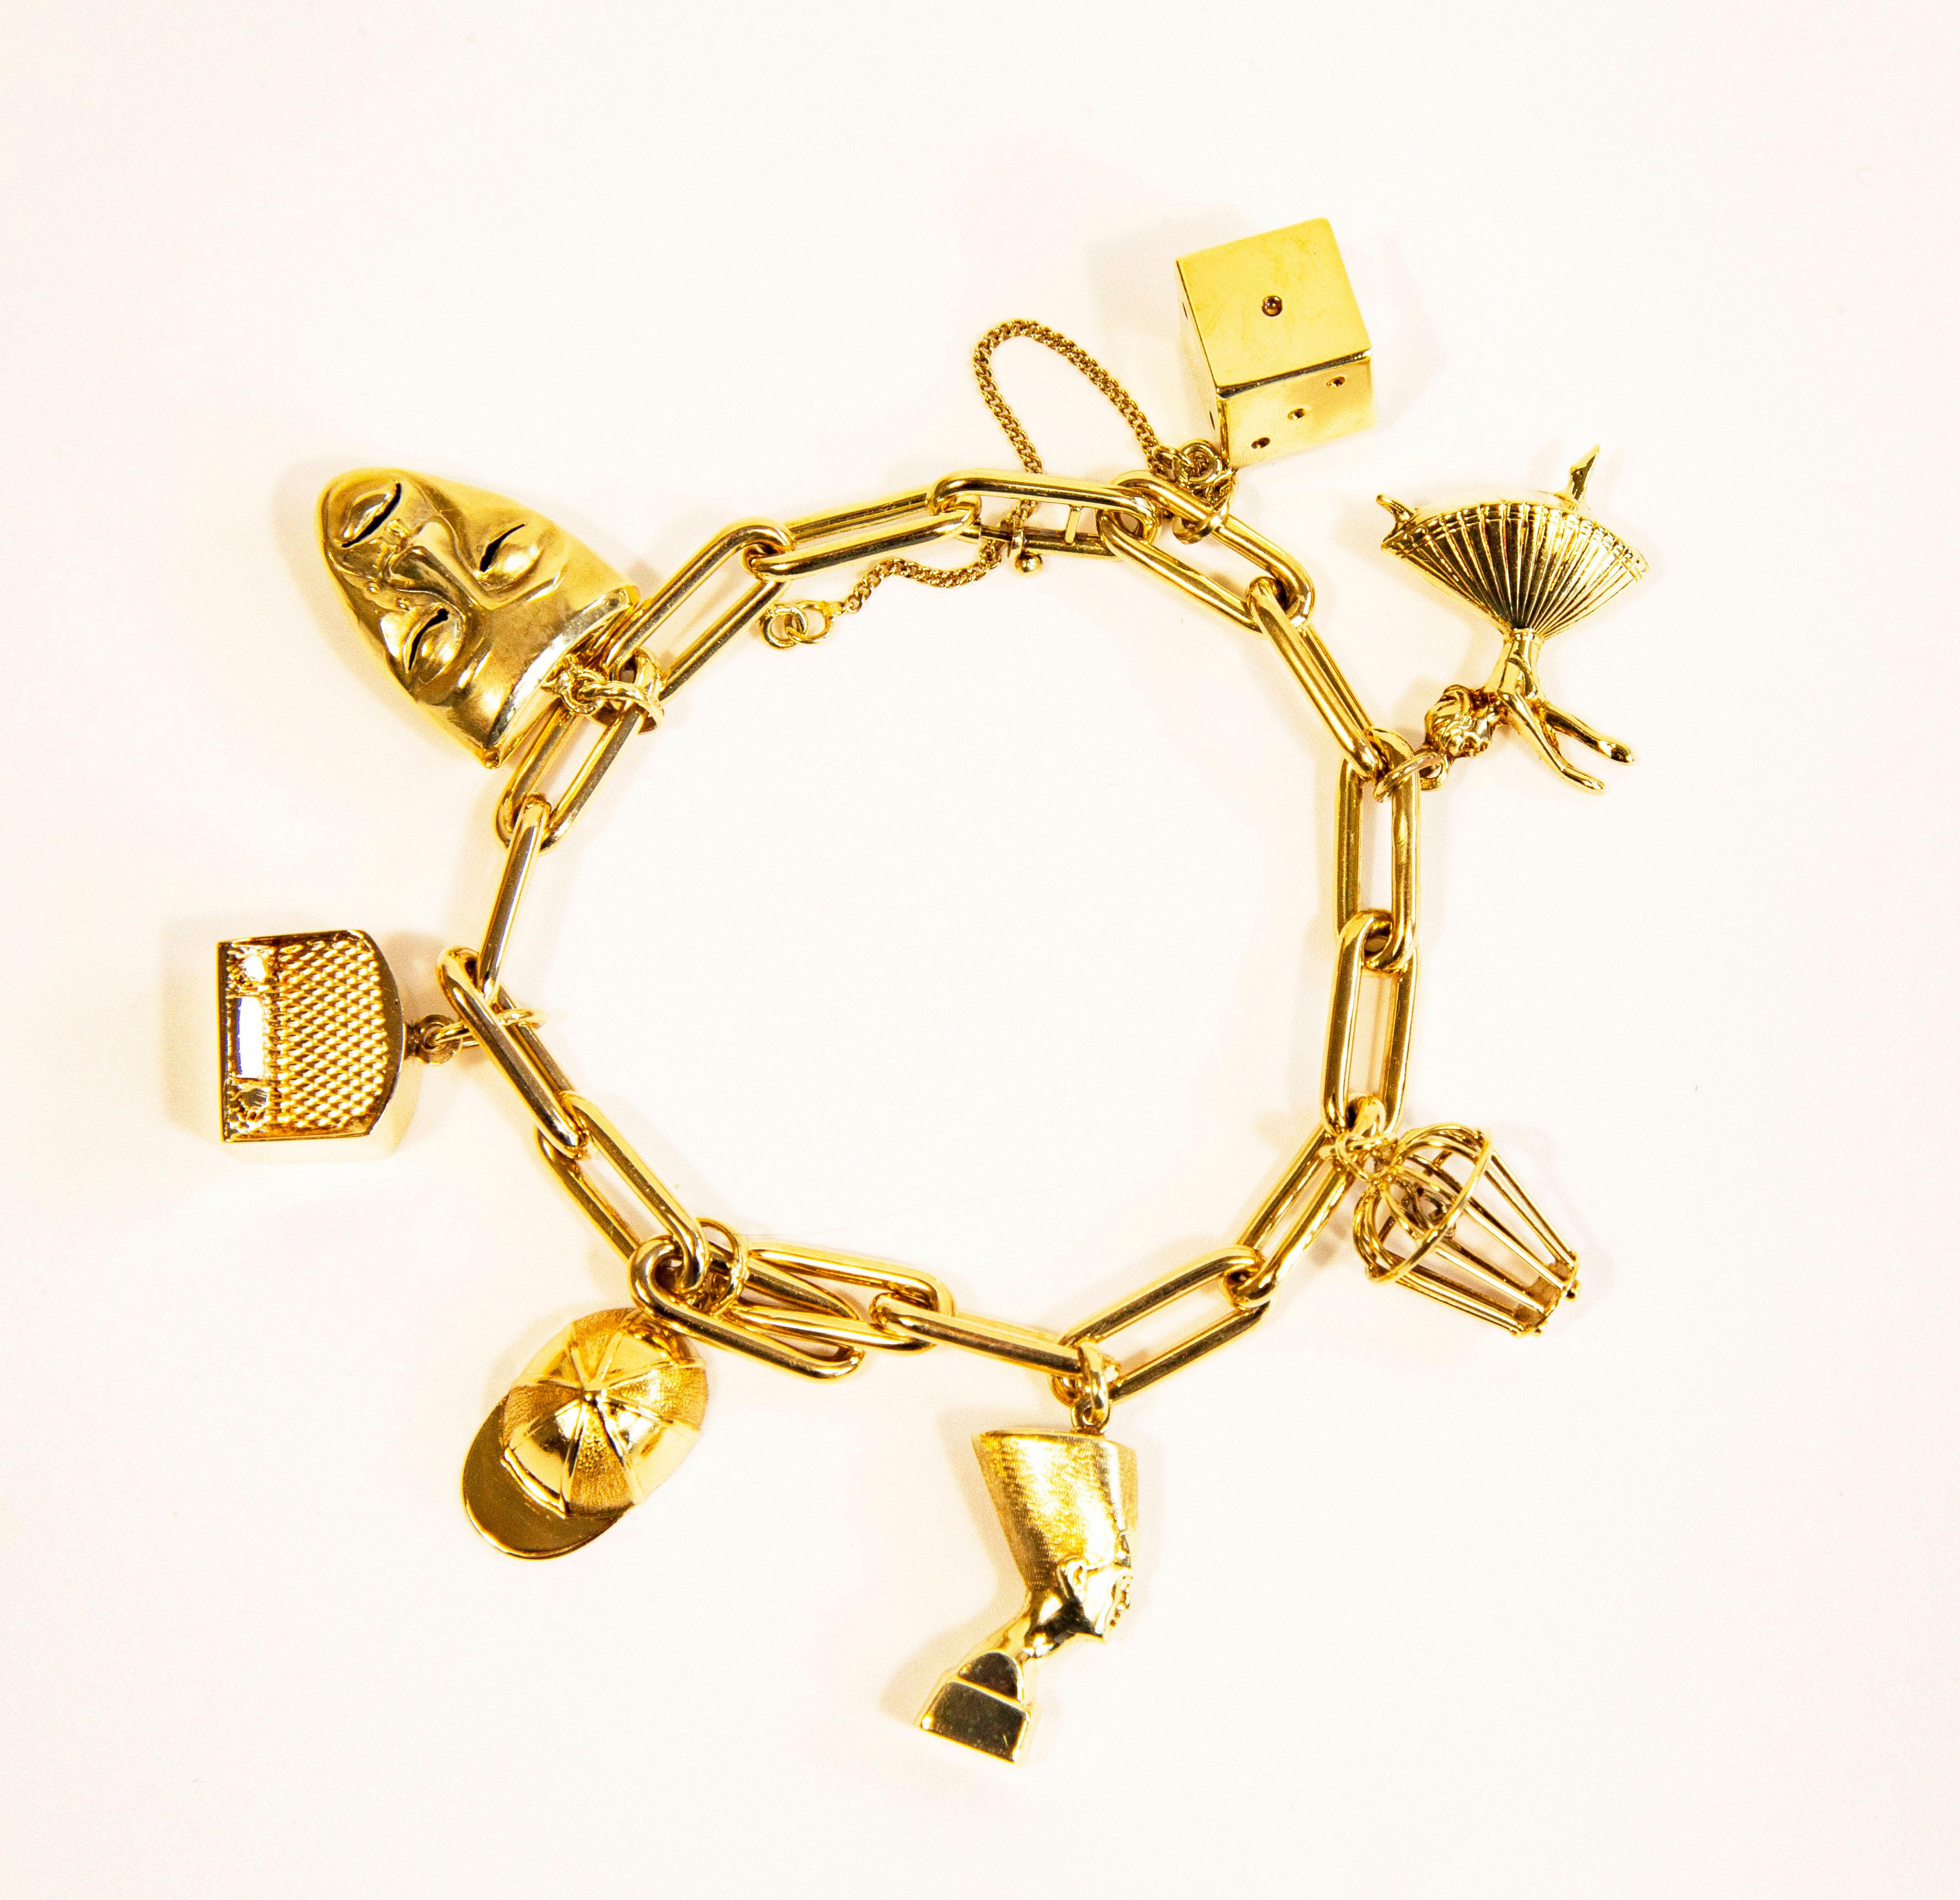 Ein Vintage-Armband aus 14 Karat Gelbgold mit 7 Charms, darunter ein Würfel, eine Ballerina, ein geschlossener Korb mit einem Herz darin, Nofretete, eine Kappe, ein Radio und eine Schauspielermaske. An den distalen Gliedern des Armbands ist eine